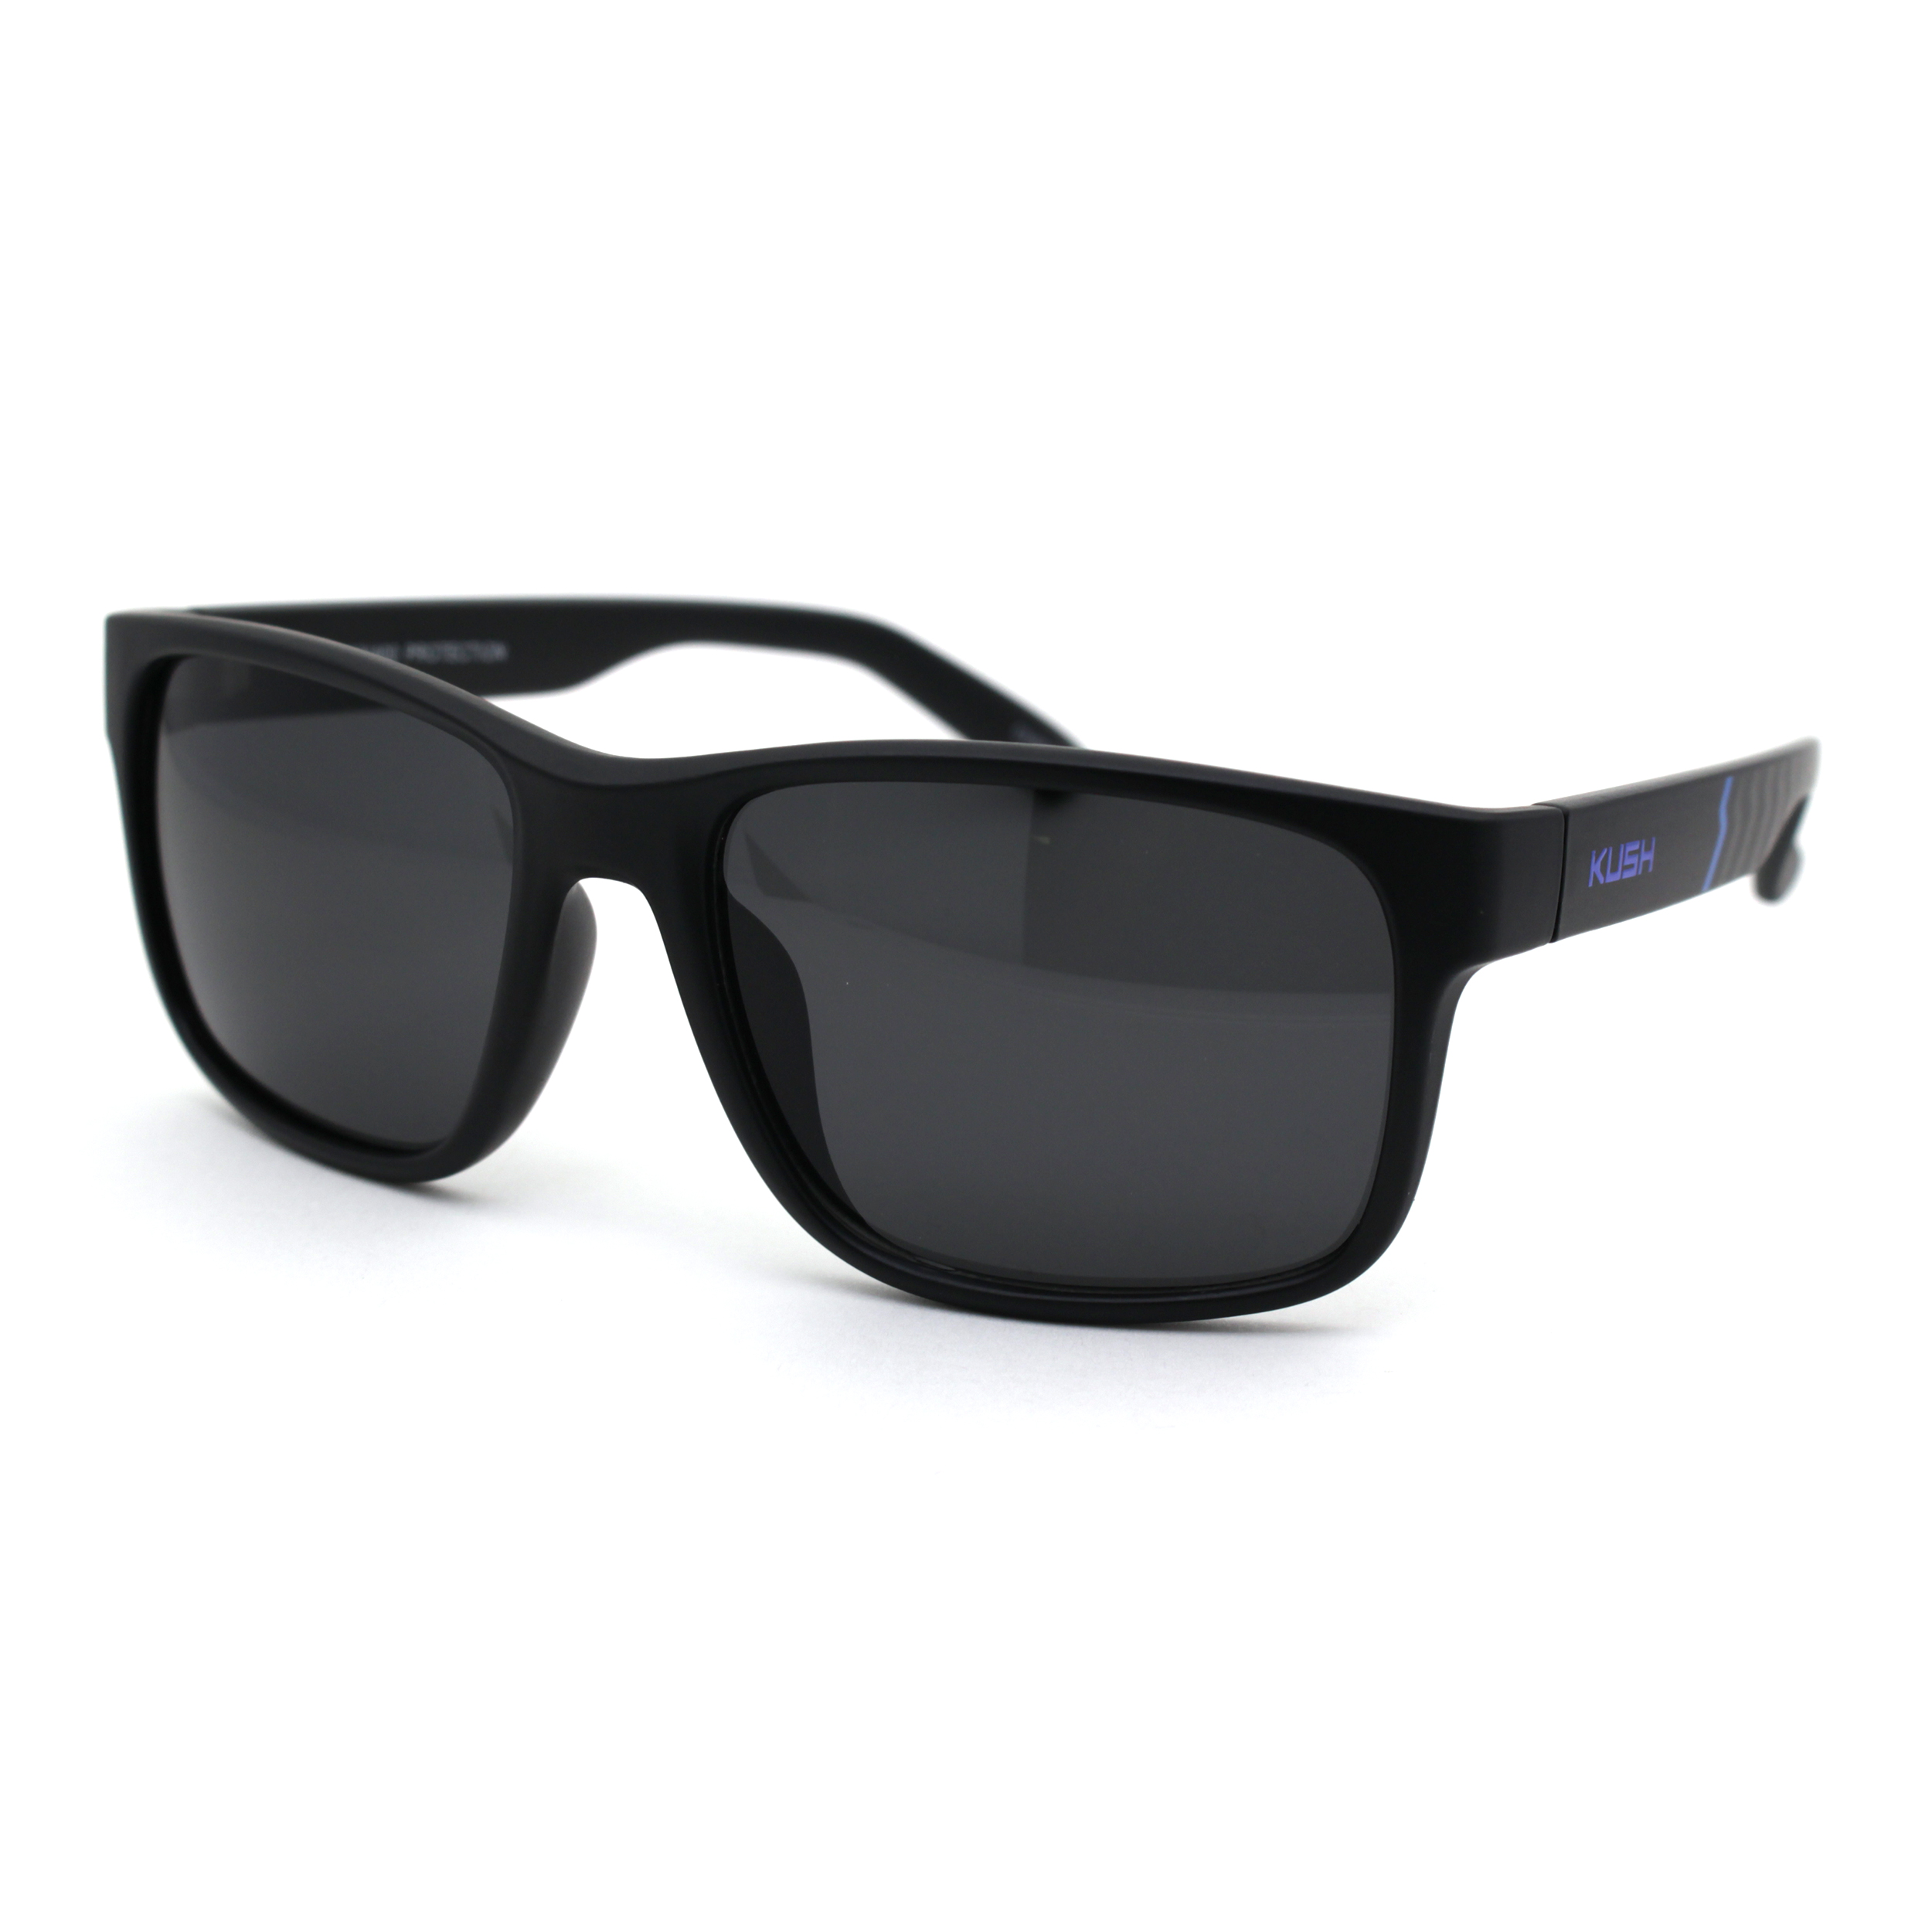 Kush Mens Black Lens Sport Horn Rim Sunglasses Matte Black Blue Black - image 1 of 4